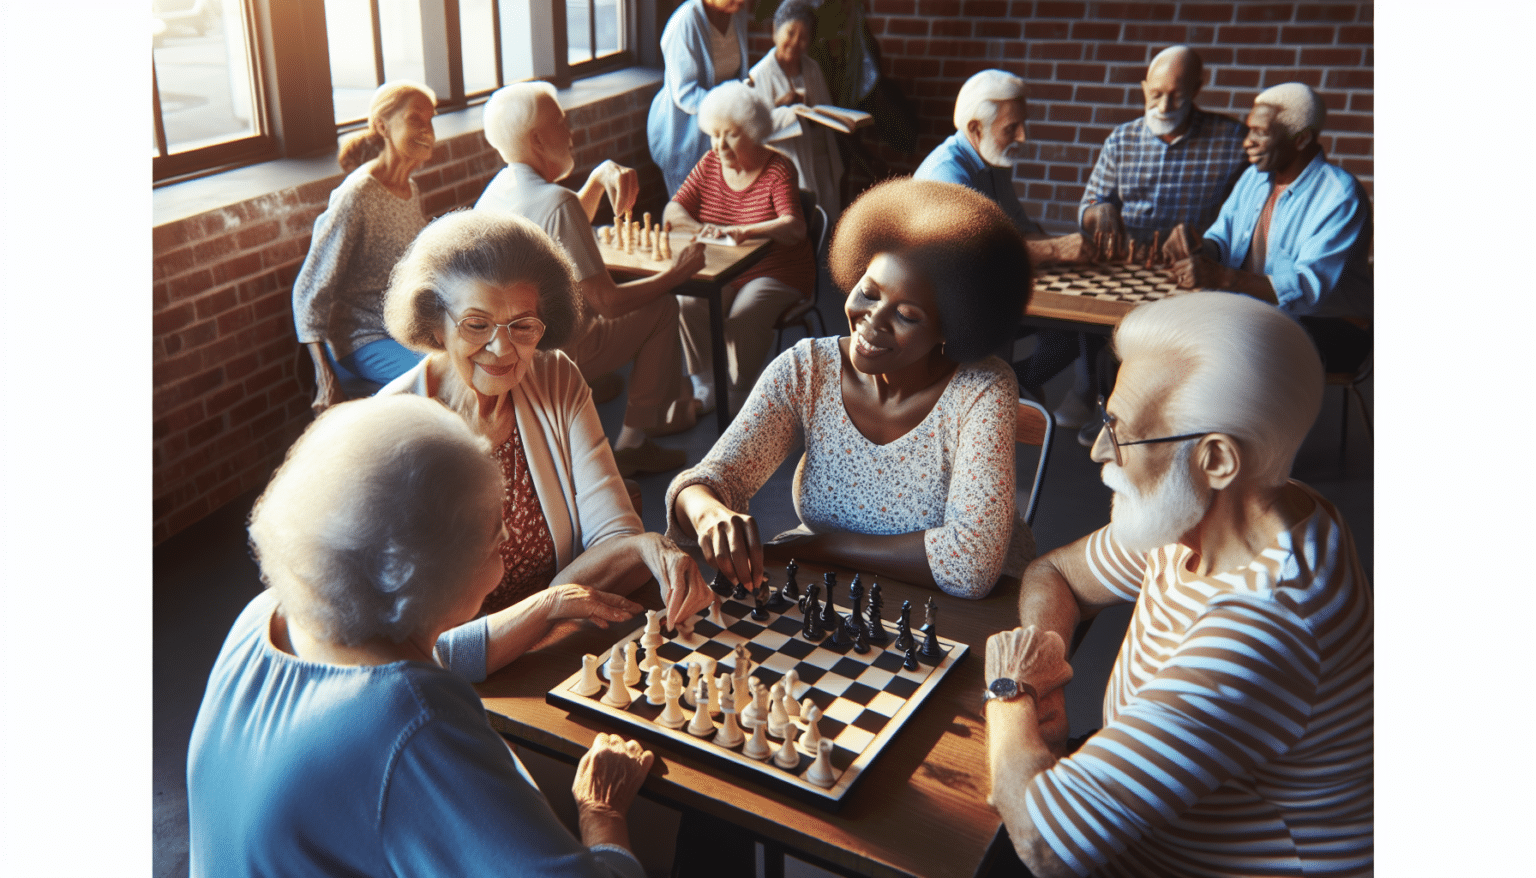 Les activités sociales et leurs bienfaits pour les seniors